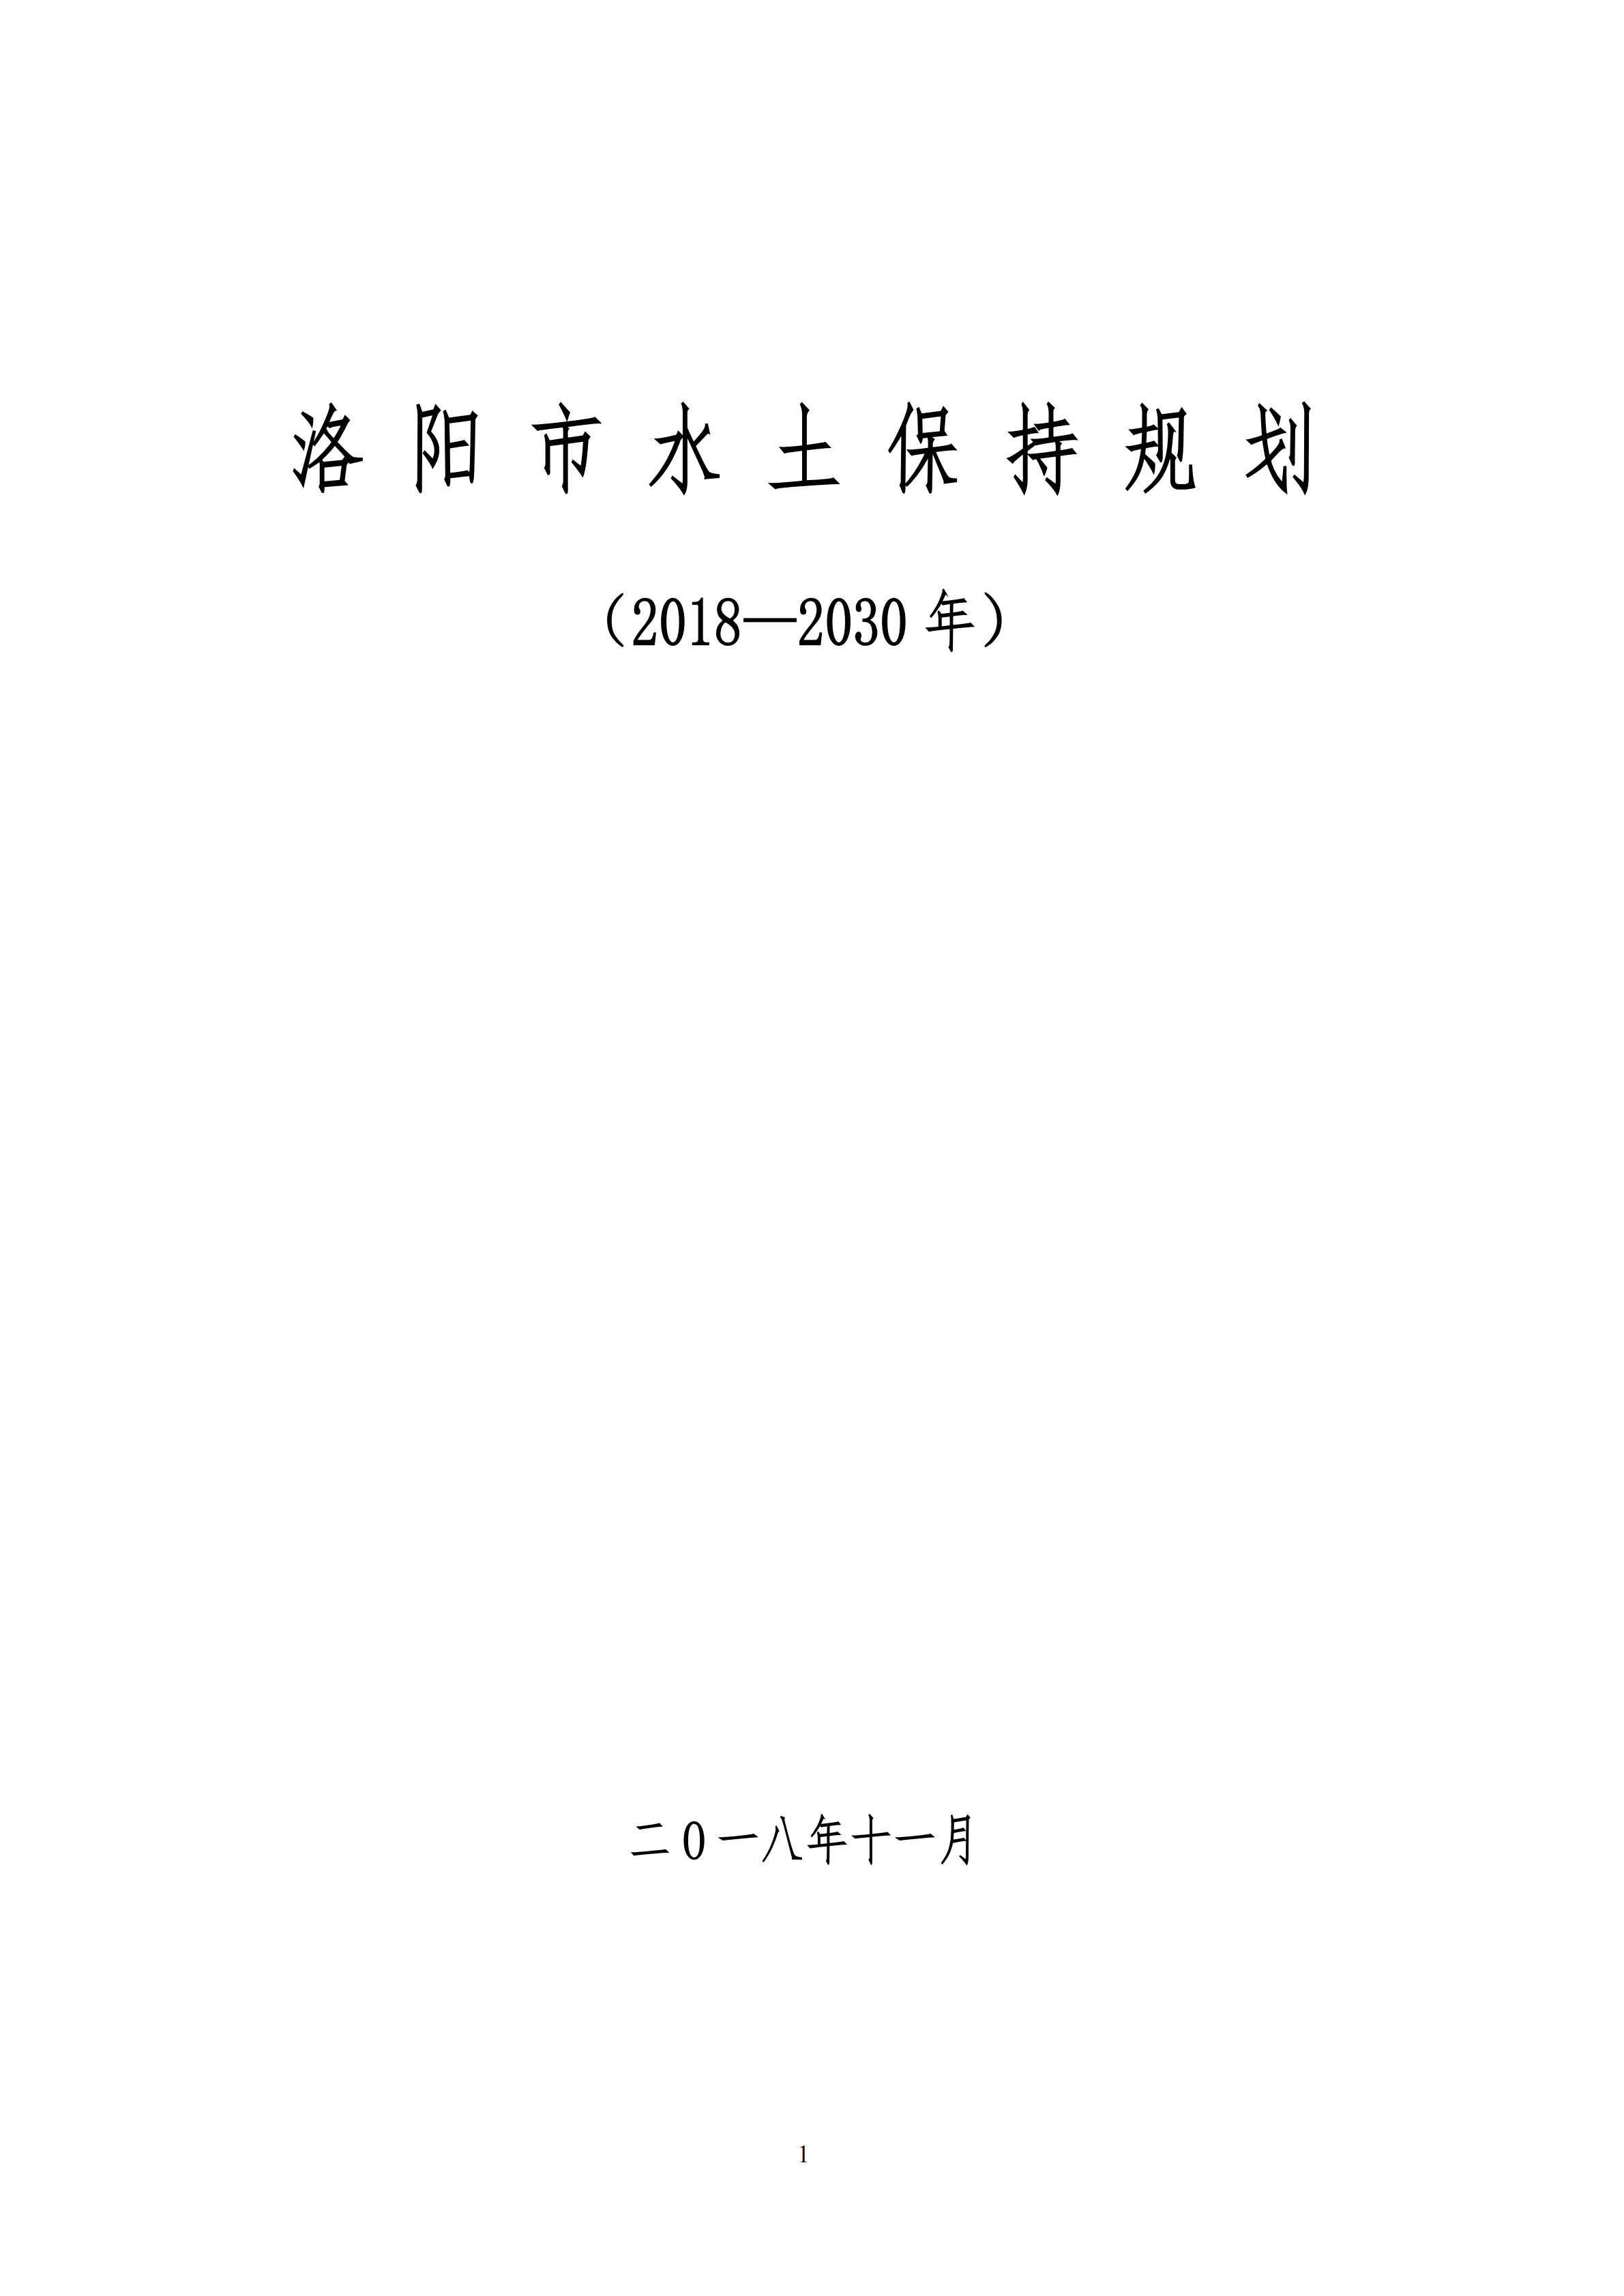 洛阳市水保规划2018-2030年终稿(图1)